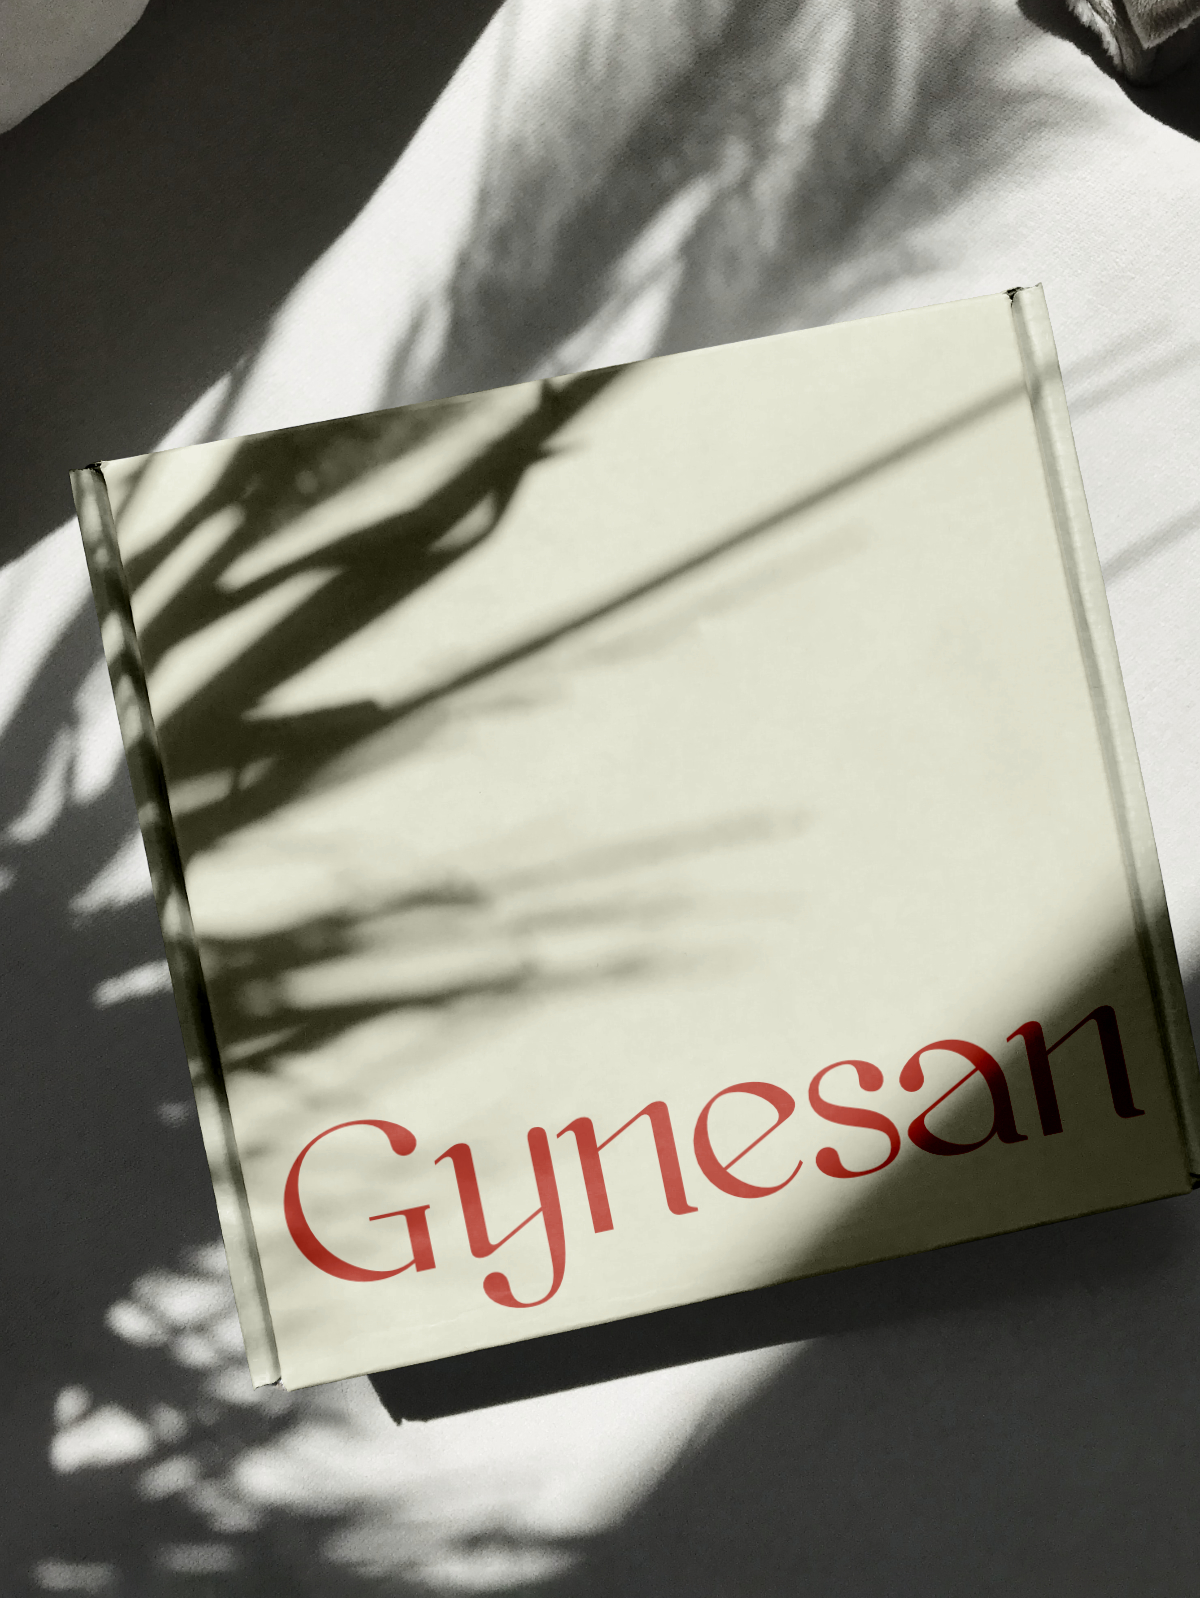 Diseño y desarrollo de identidad visual corporativa para Gynesan. Detalle packaging.